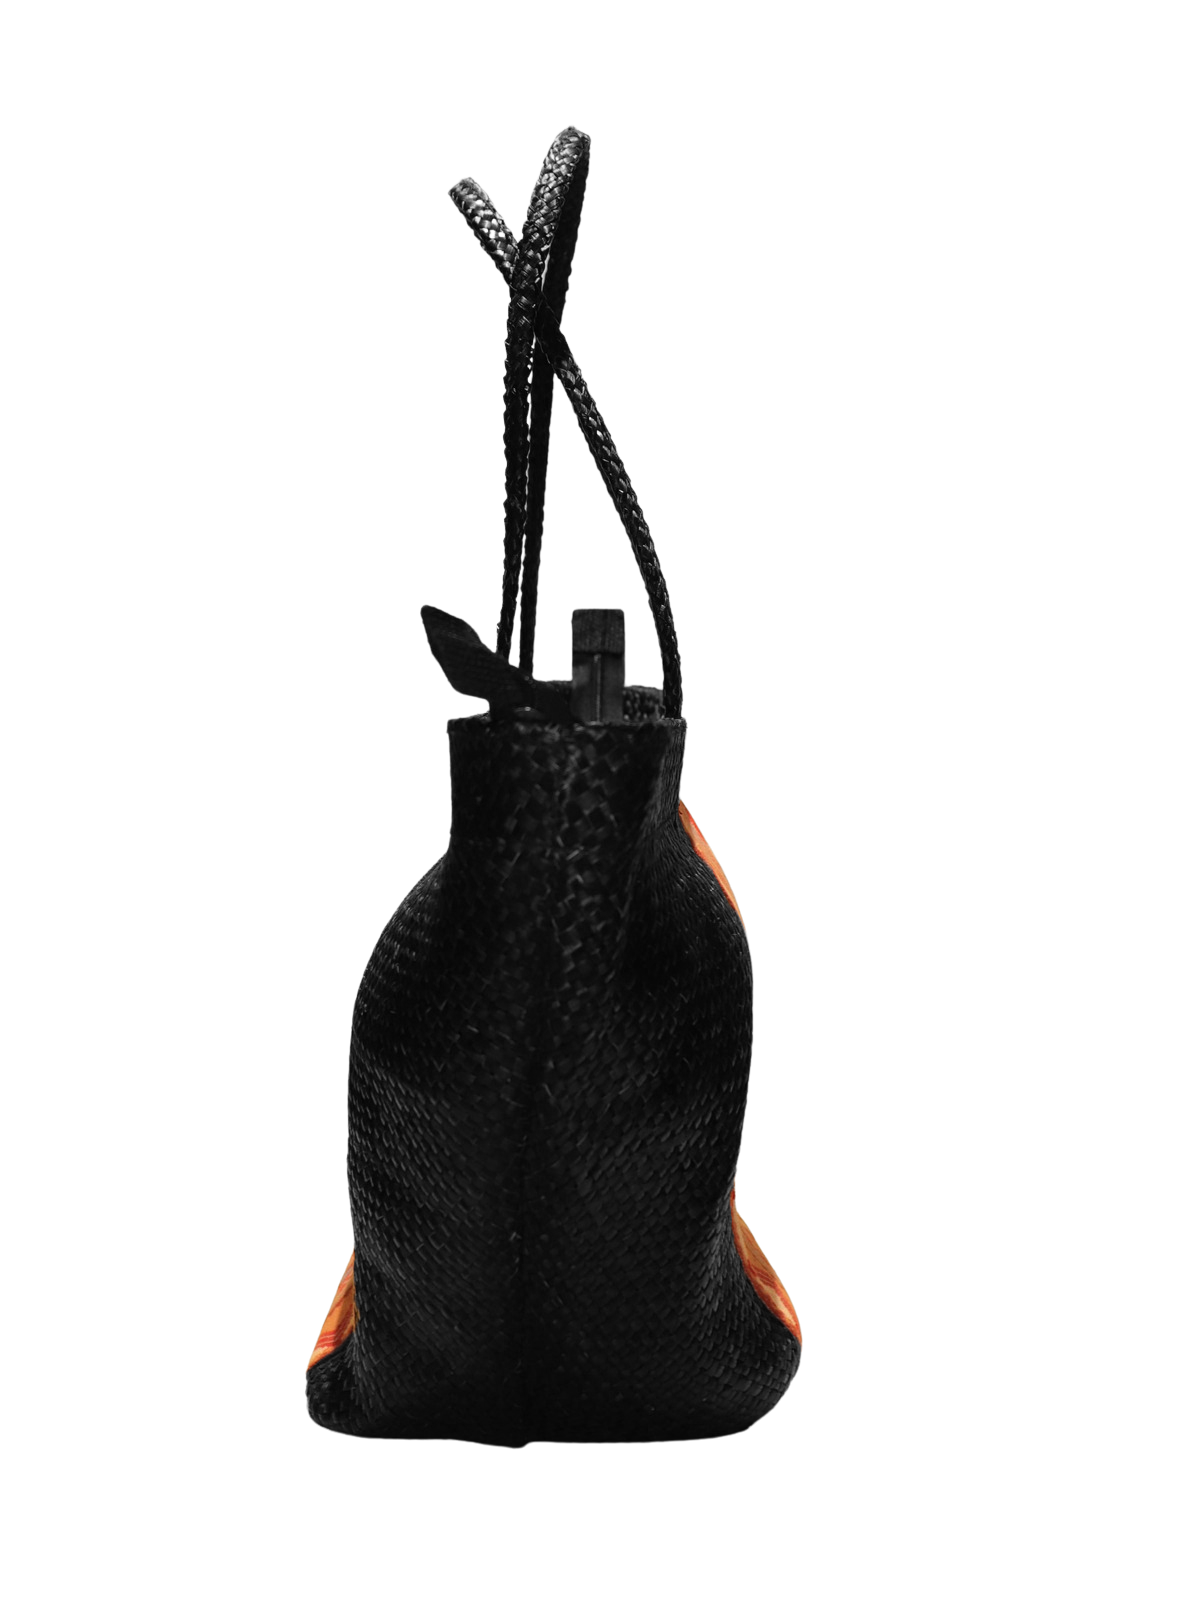 Black Bag with Baguio Cloth - Medium